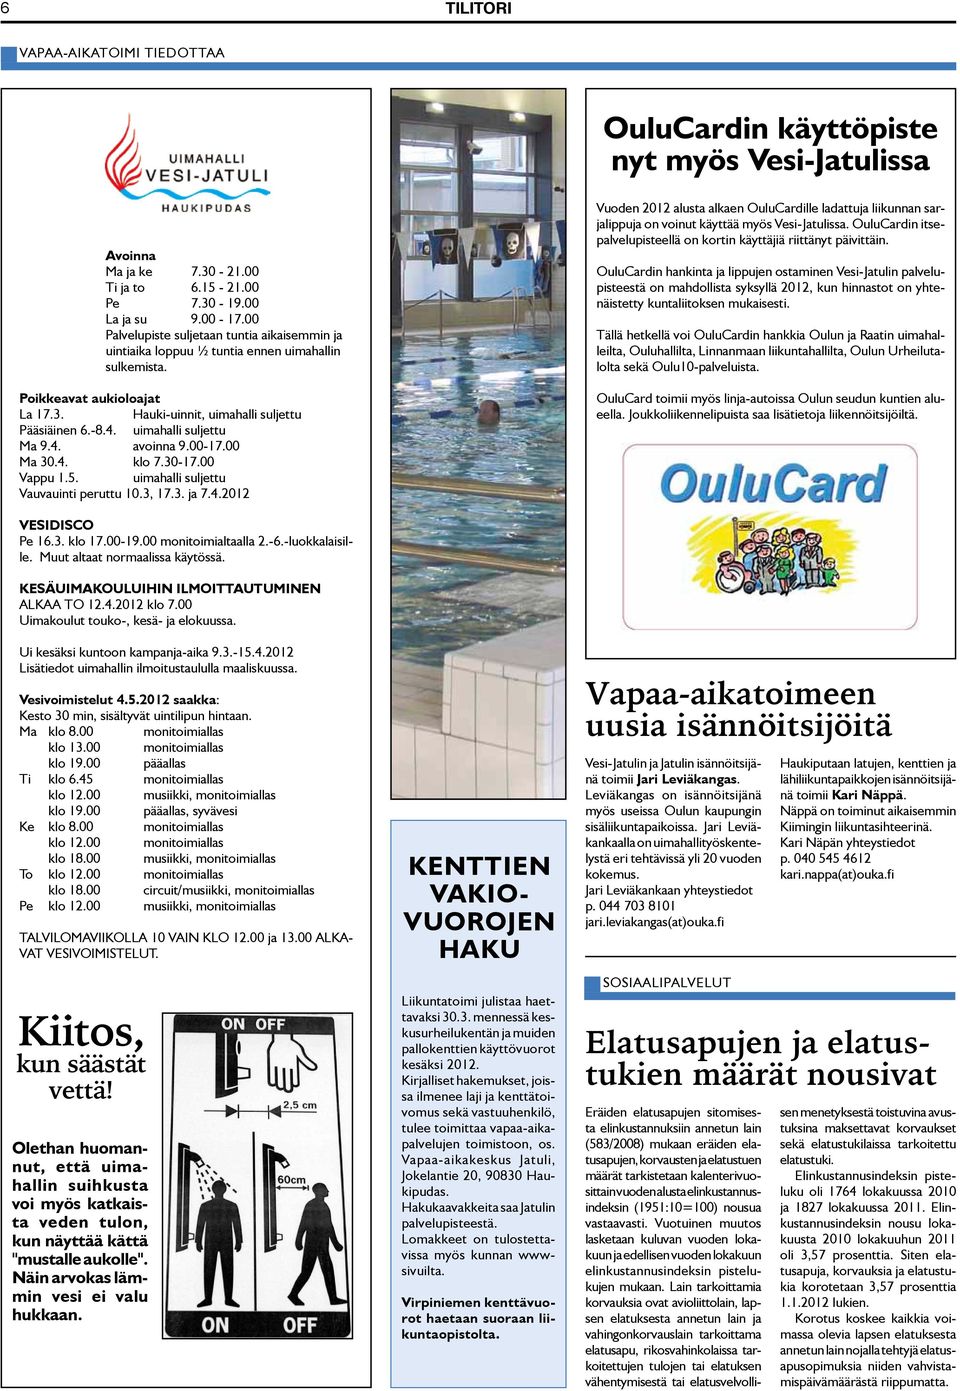 uimahalli suljettu Ma 9.4. avoinna 9.00-17.00 Ma 30.4. klo 7.30-17.00 Vappu 1.5. uimahalli suljettu Vauvauinti peruttu 10.3, 17.3. ja 7.4.2012 Vuoden 2012 alusta alkaen OuluCardille ladattuja liikunnan sarjalippuja on voinut käyttää myös Vesi-Jatulissa.